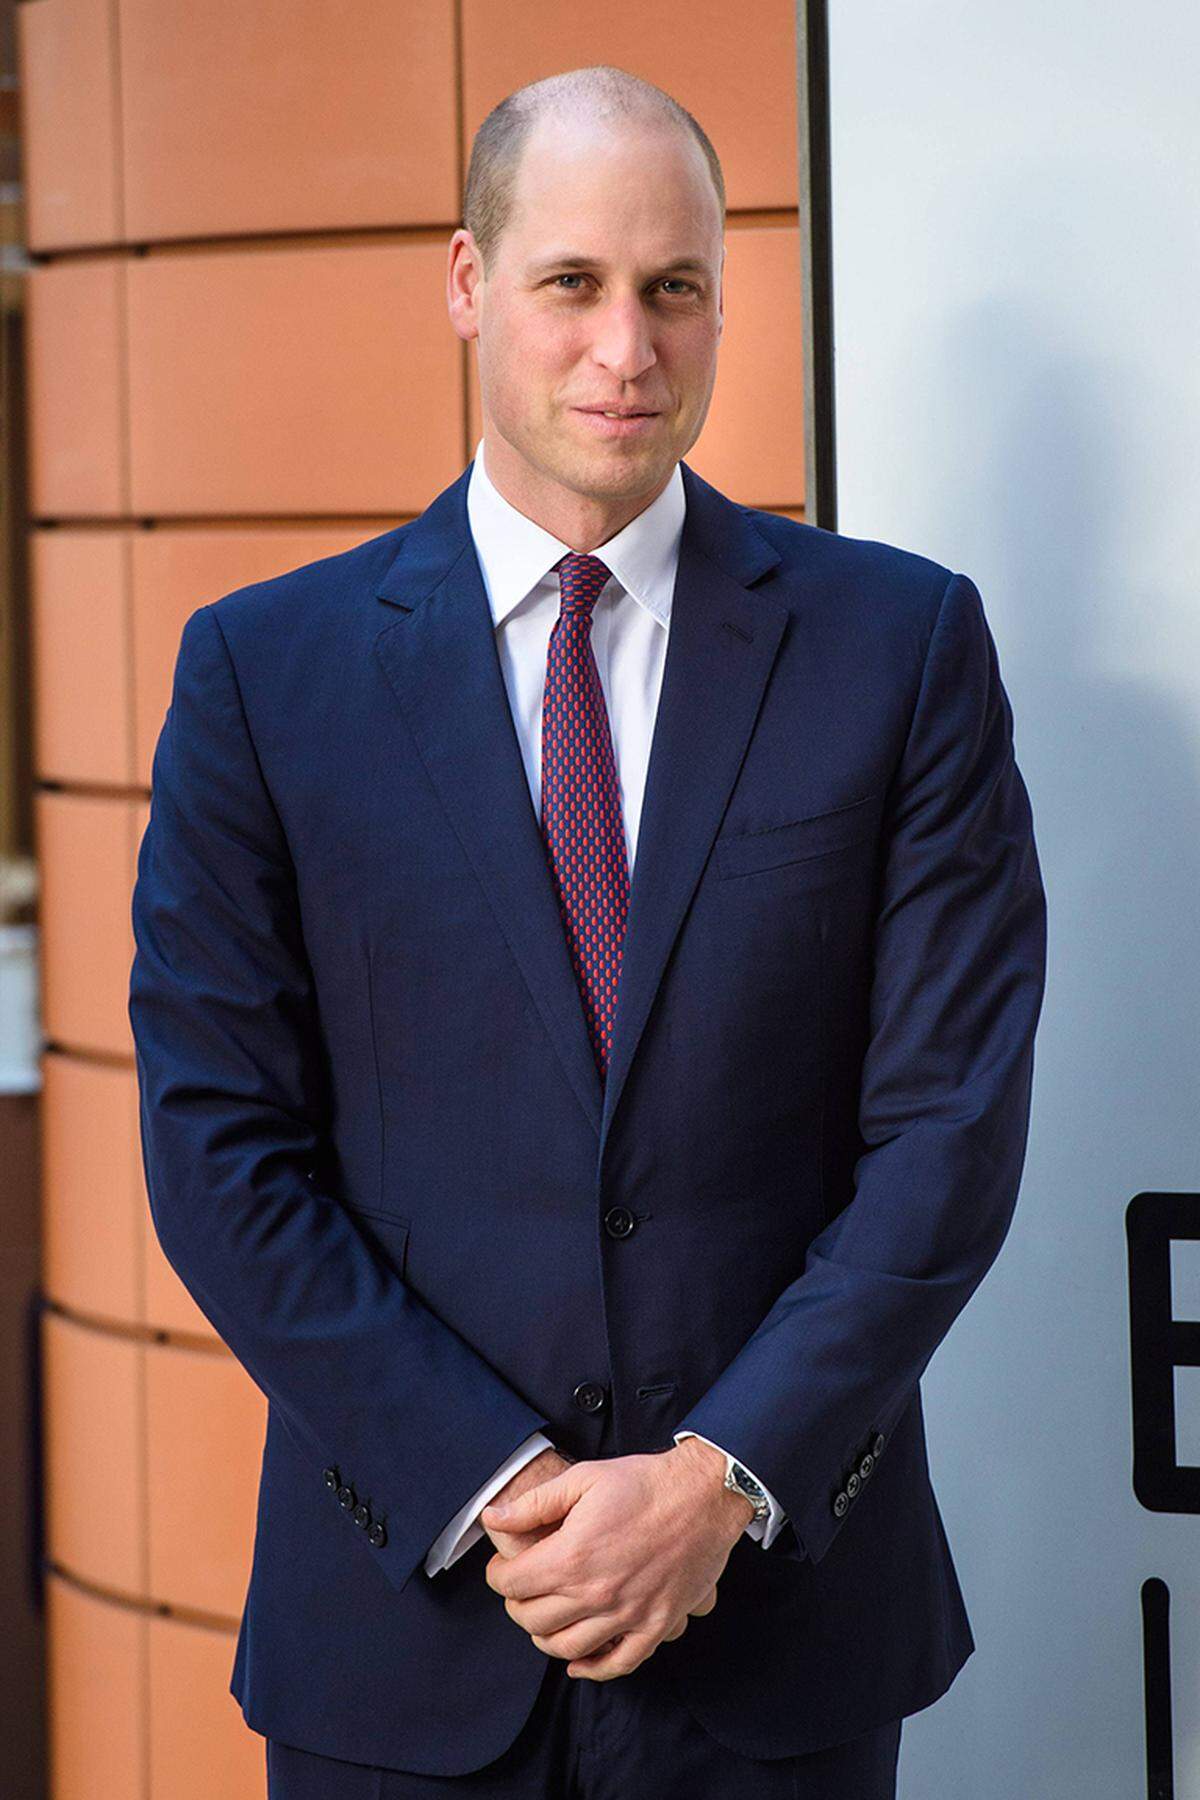 Prinz William trat zum ersten Mal mit einem extrem kurzen Haarschnitt in der Öffentlichkeit auf. Im neuen Look präsentierte sich der 35-Jährige beim Besuch eines Kinderkrankenhauses in London.